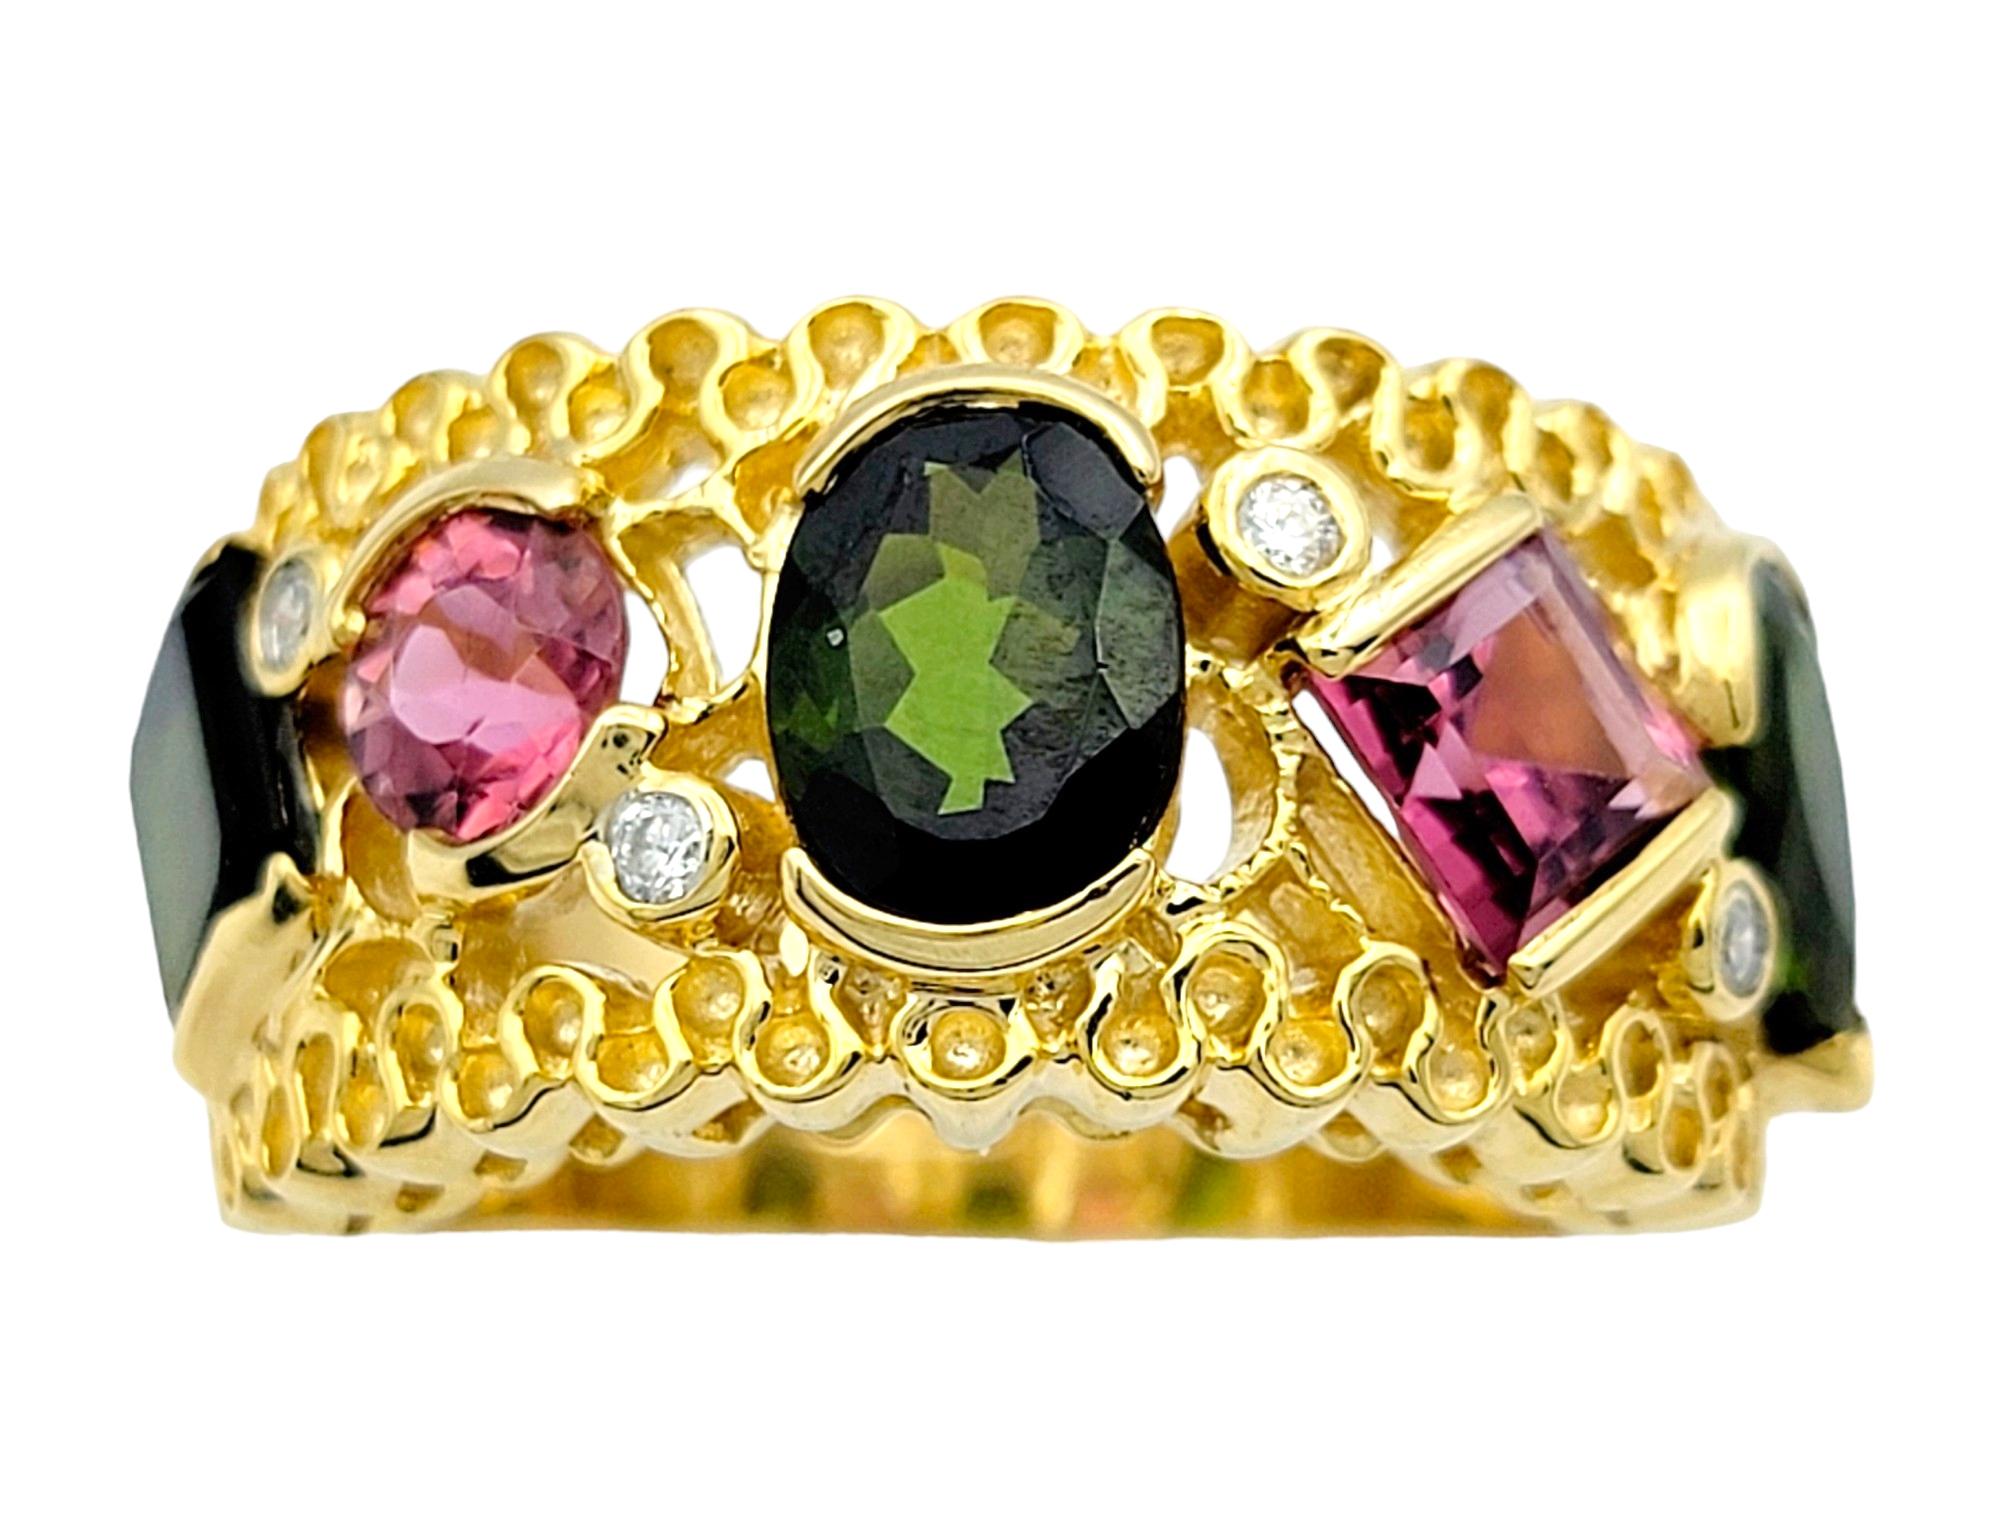 Ringgröße: 8

Dieser bezaubernde Ring strahlt mit seinen Turmalinen, die in warmes 14-karätiges Gelbgold gefasst sind, einen lebendigen und eklektischen Charme aus. Jeder Turmalin mit seinen Rosa- und Grüntönen verleiht dem Ring einen einzigartigen